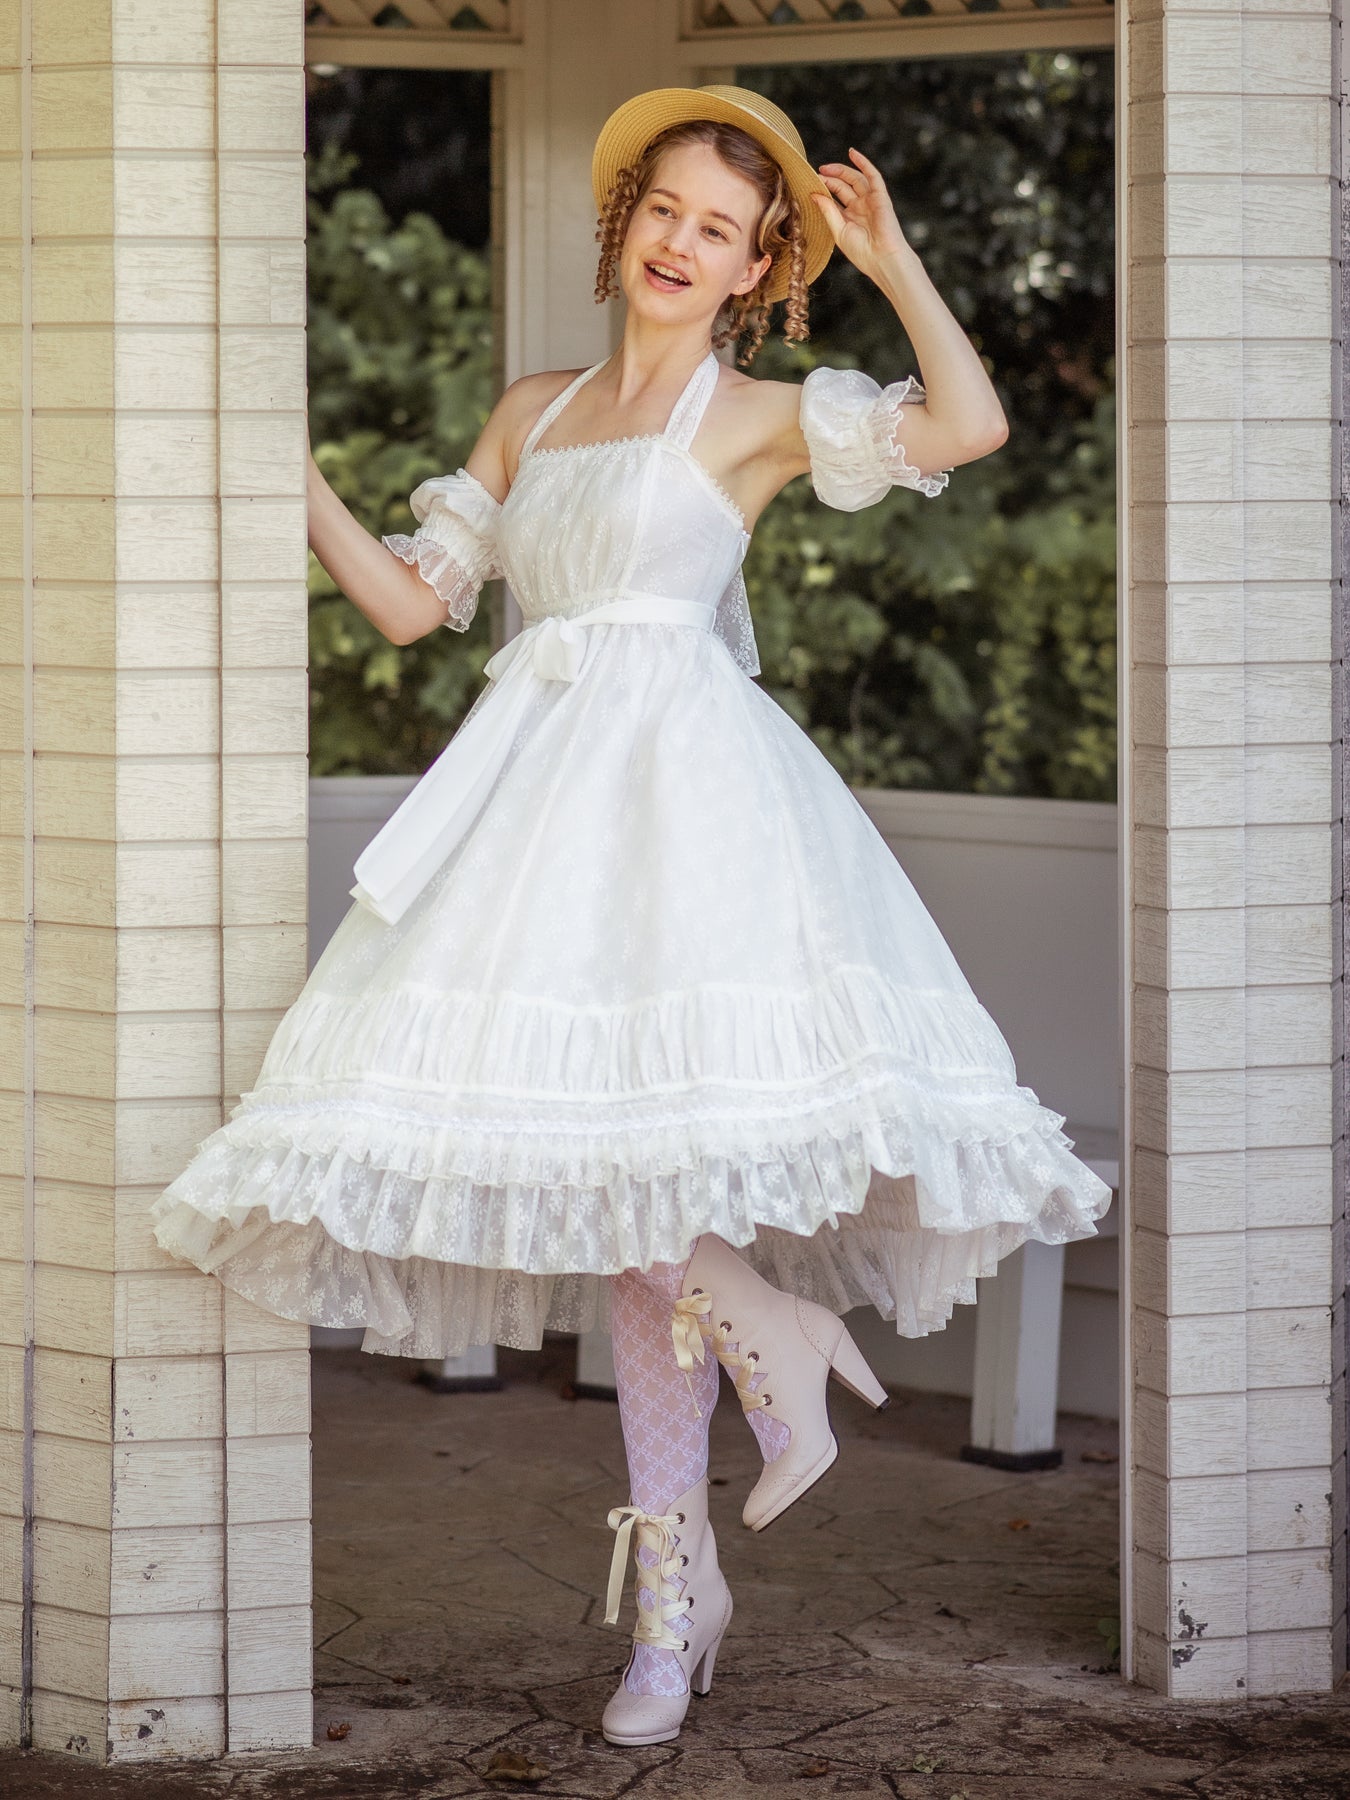 エレガントレーシーホルターネックドレス - Victorian maiden